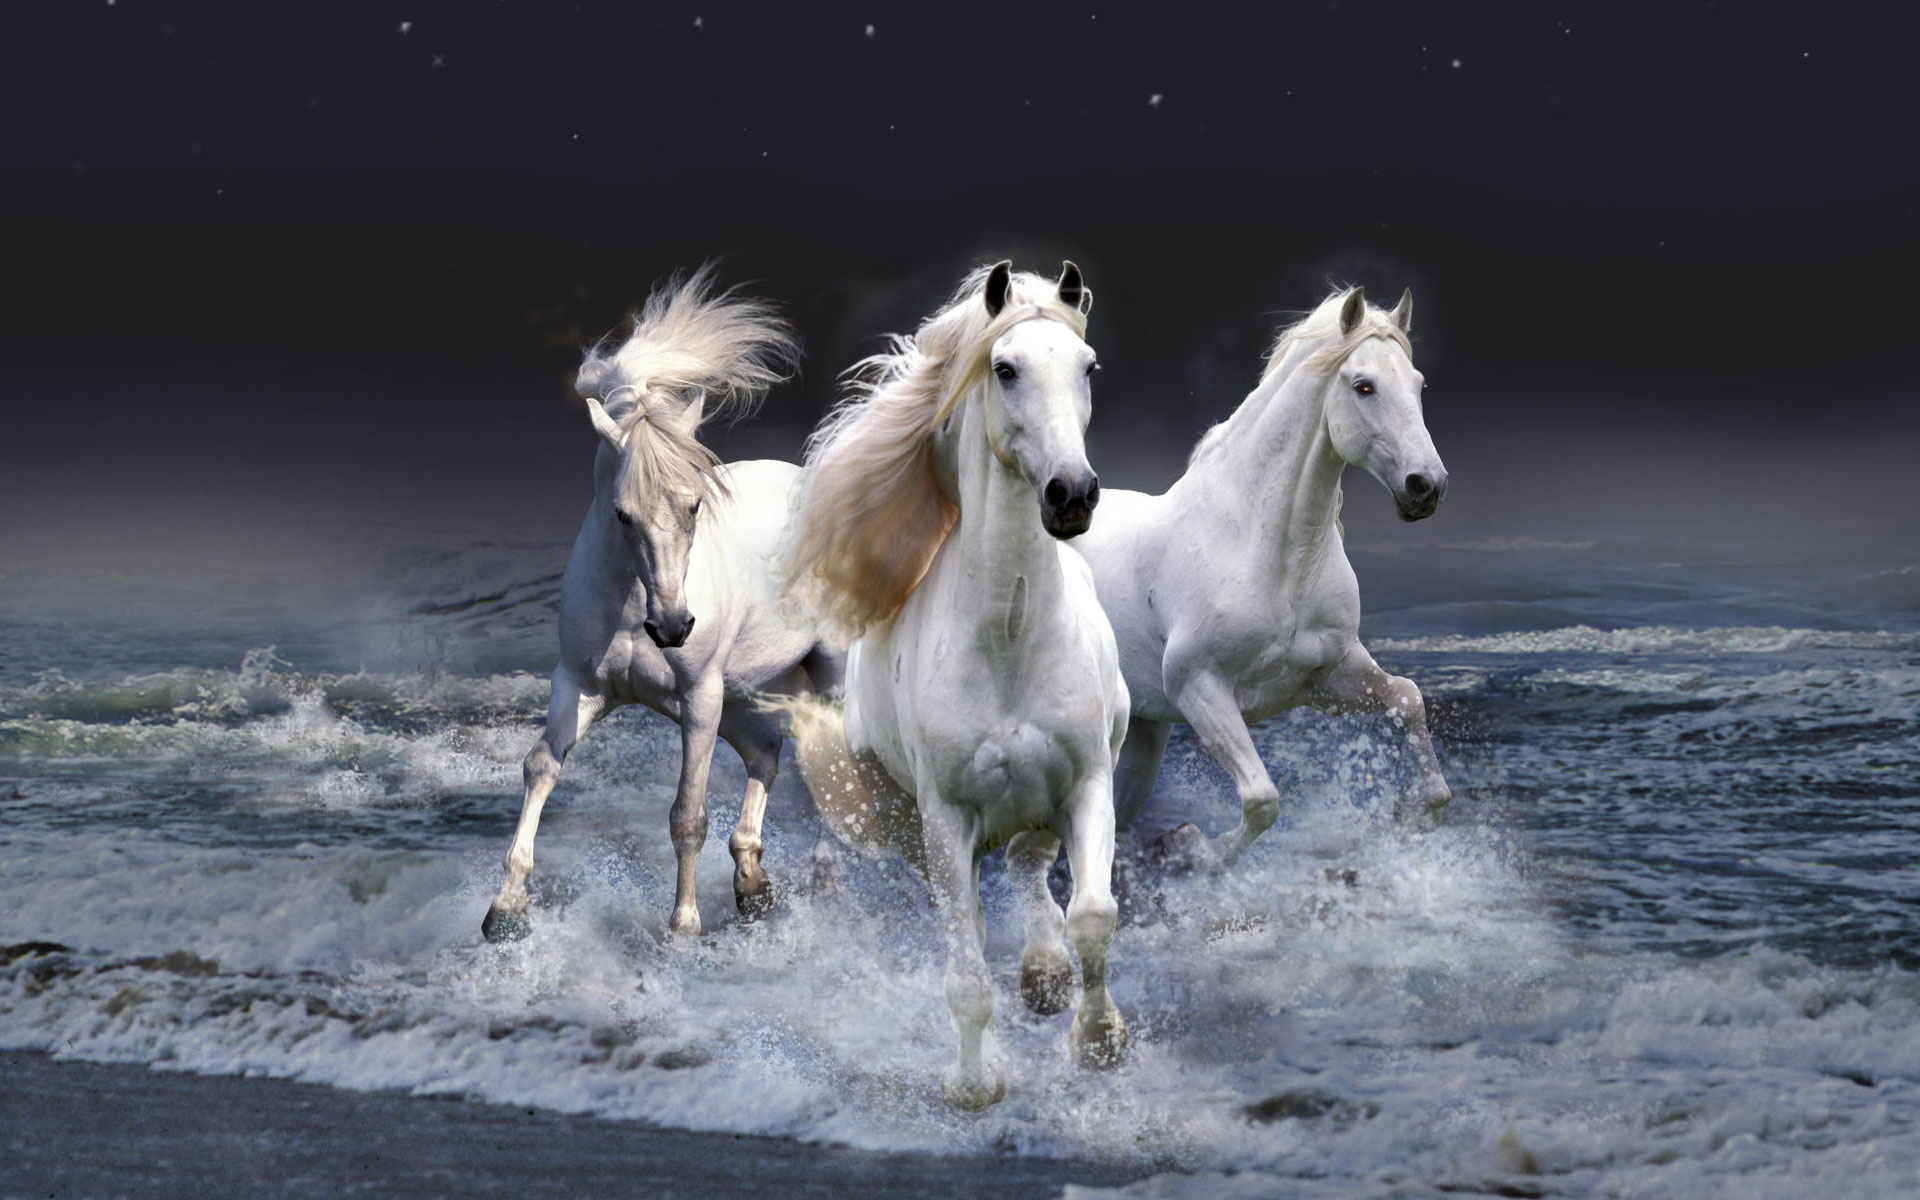 Mystic Horses1605310750 - Mystic Horses - Parrot, Mystic, Horses